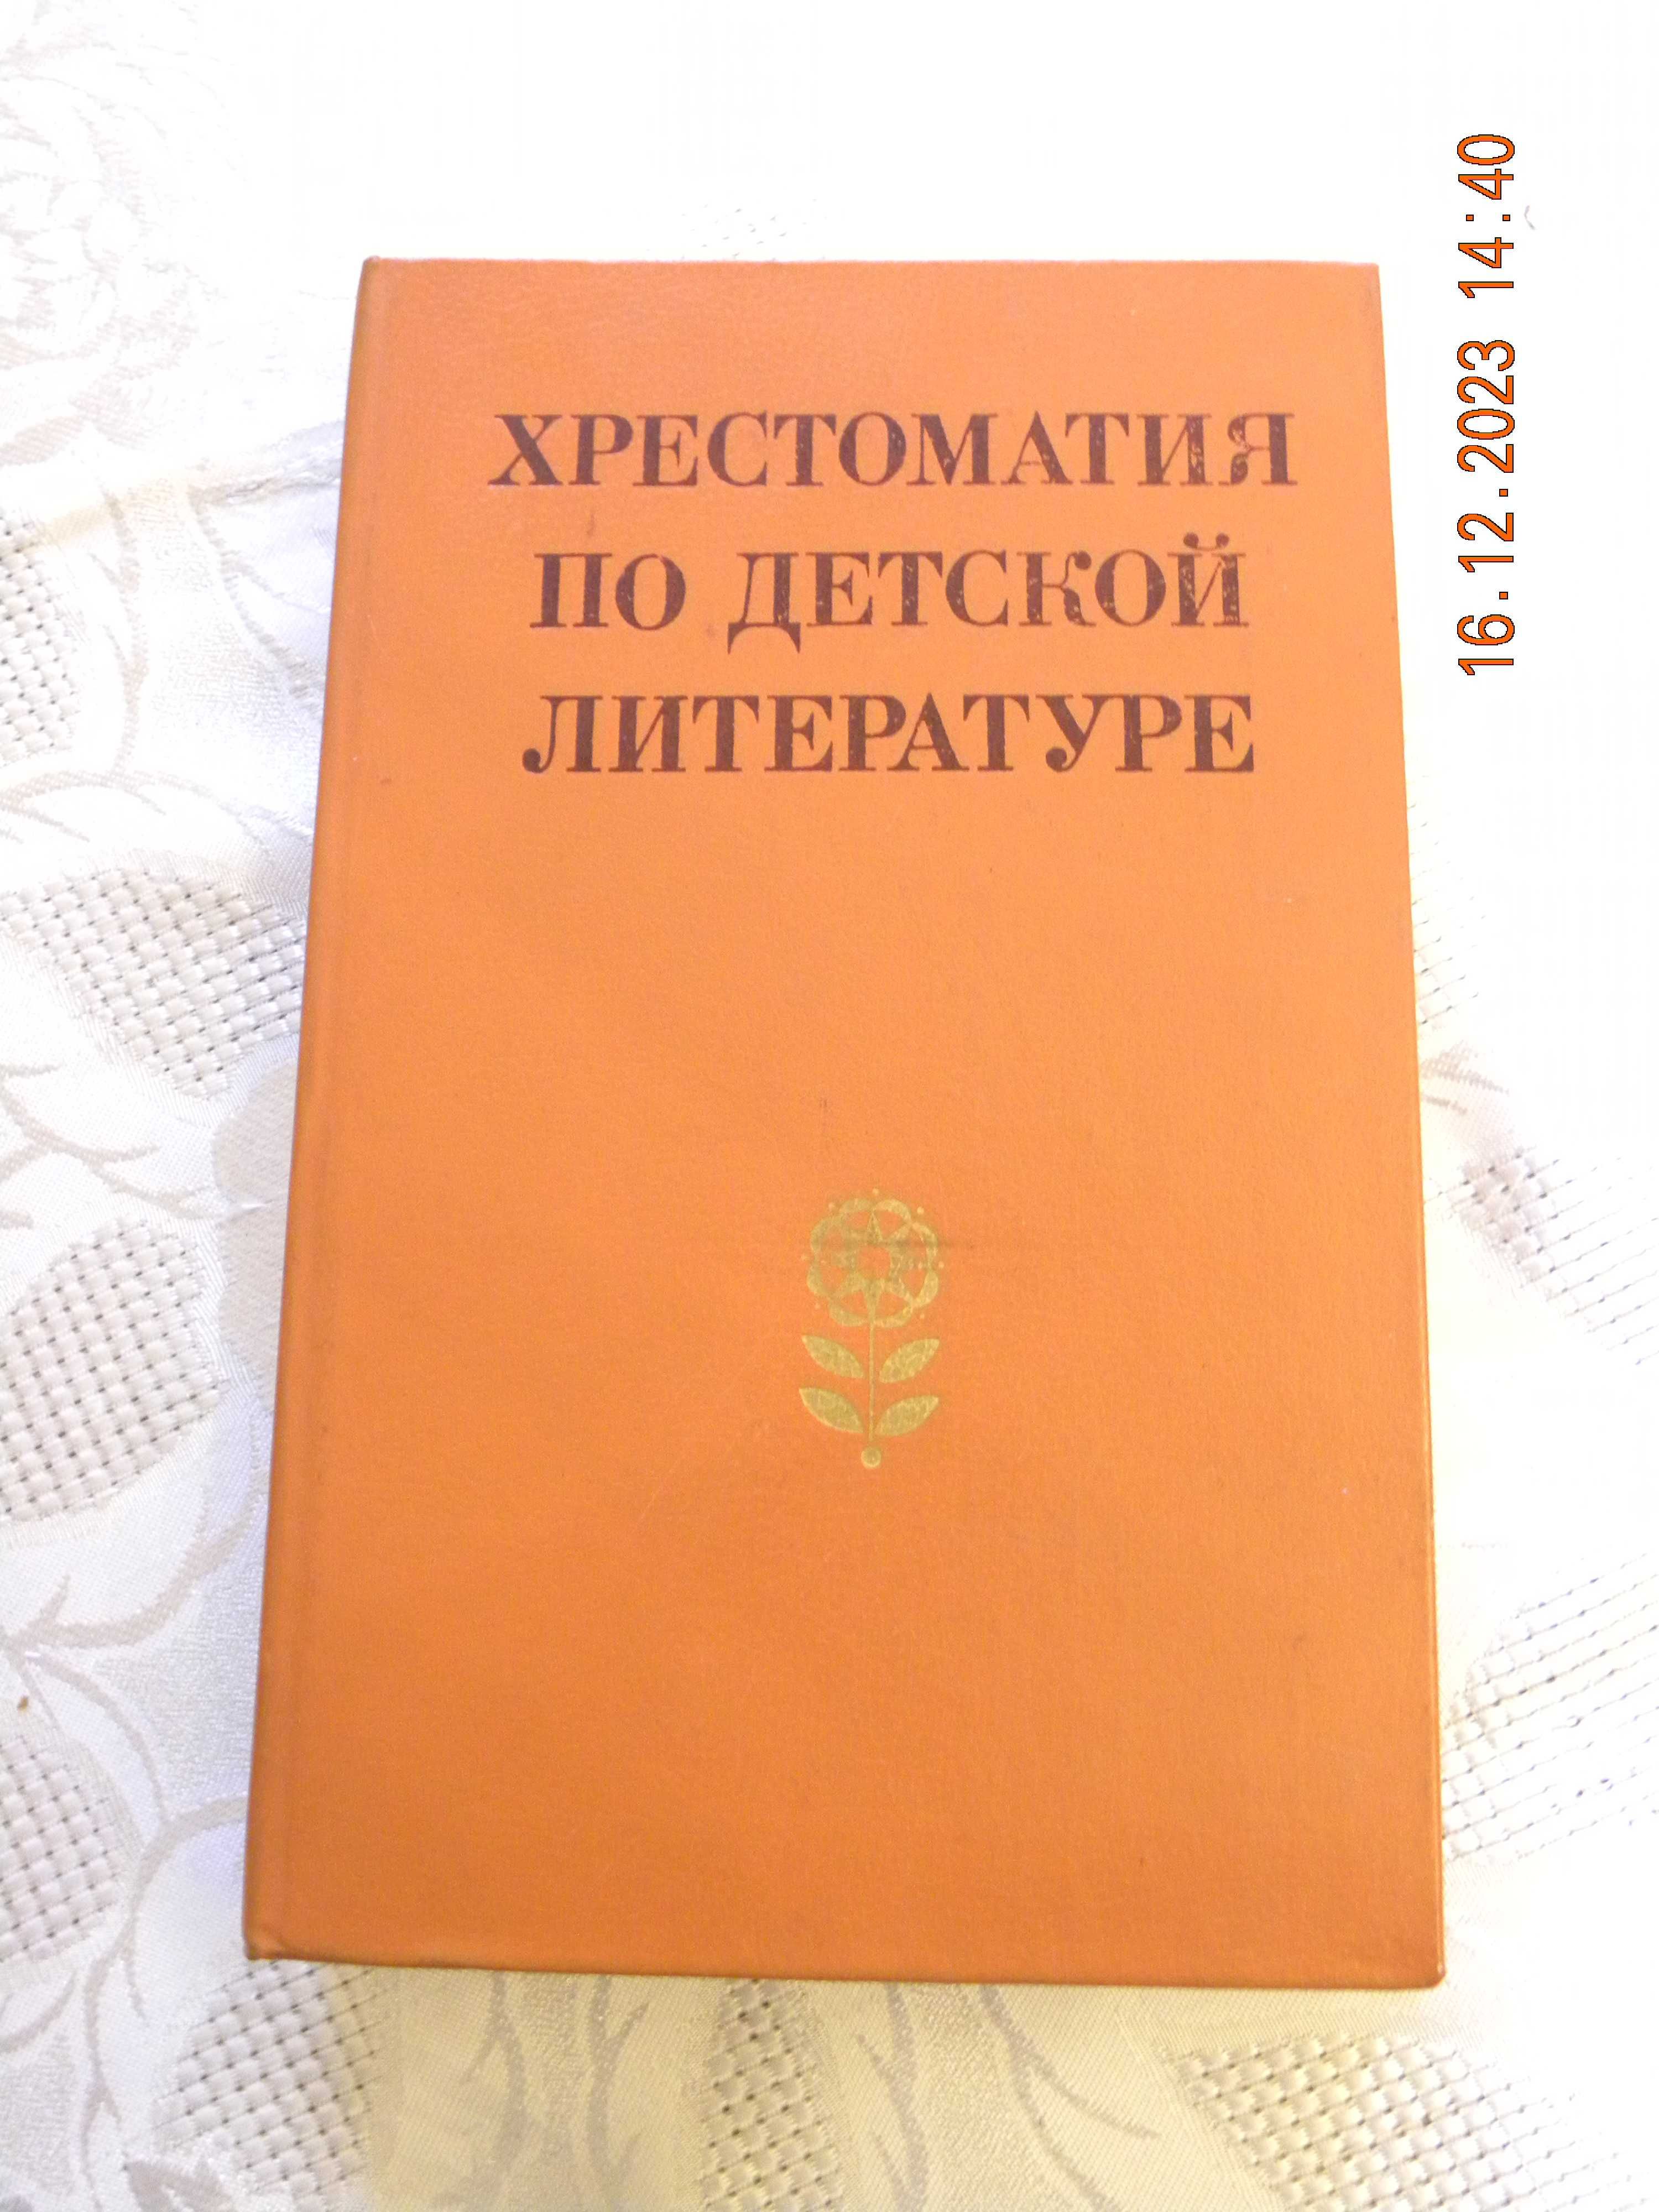 Antologia literatury dziecięcej ( język rosyjski)